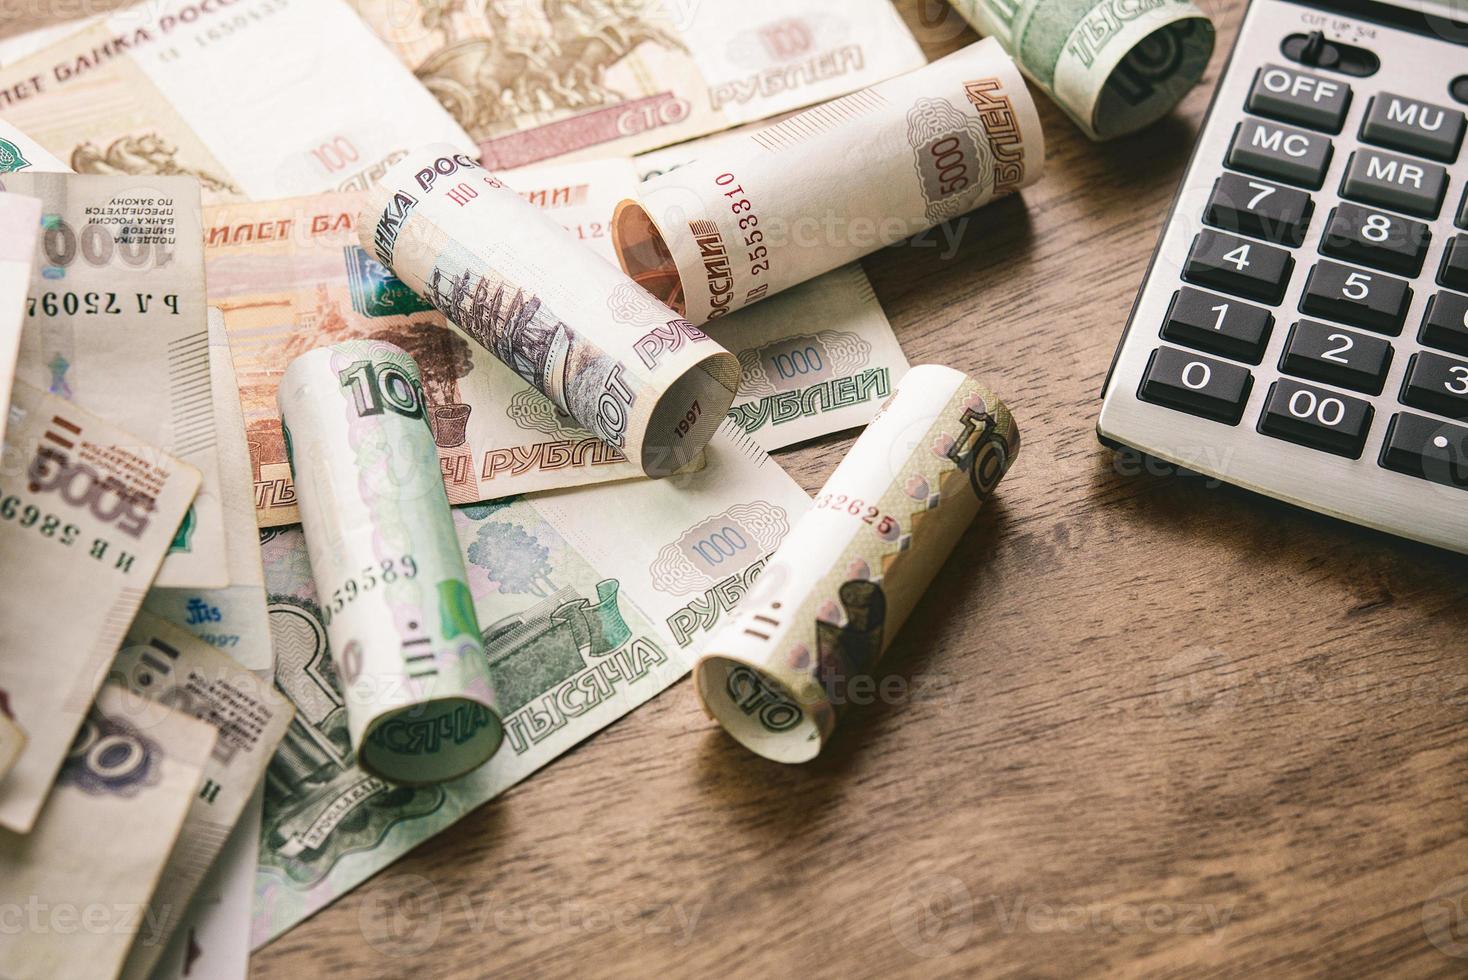 Russische roebel geld met rekenmachine op houten tafel achtergrond voor financiële en investeringsconcepten foto